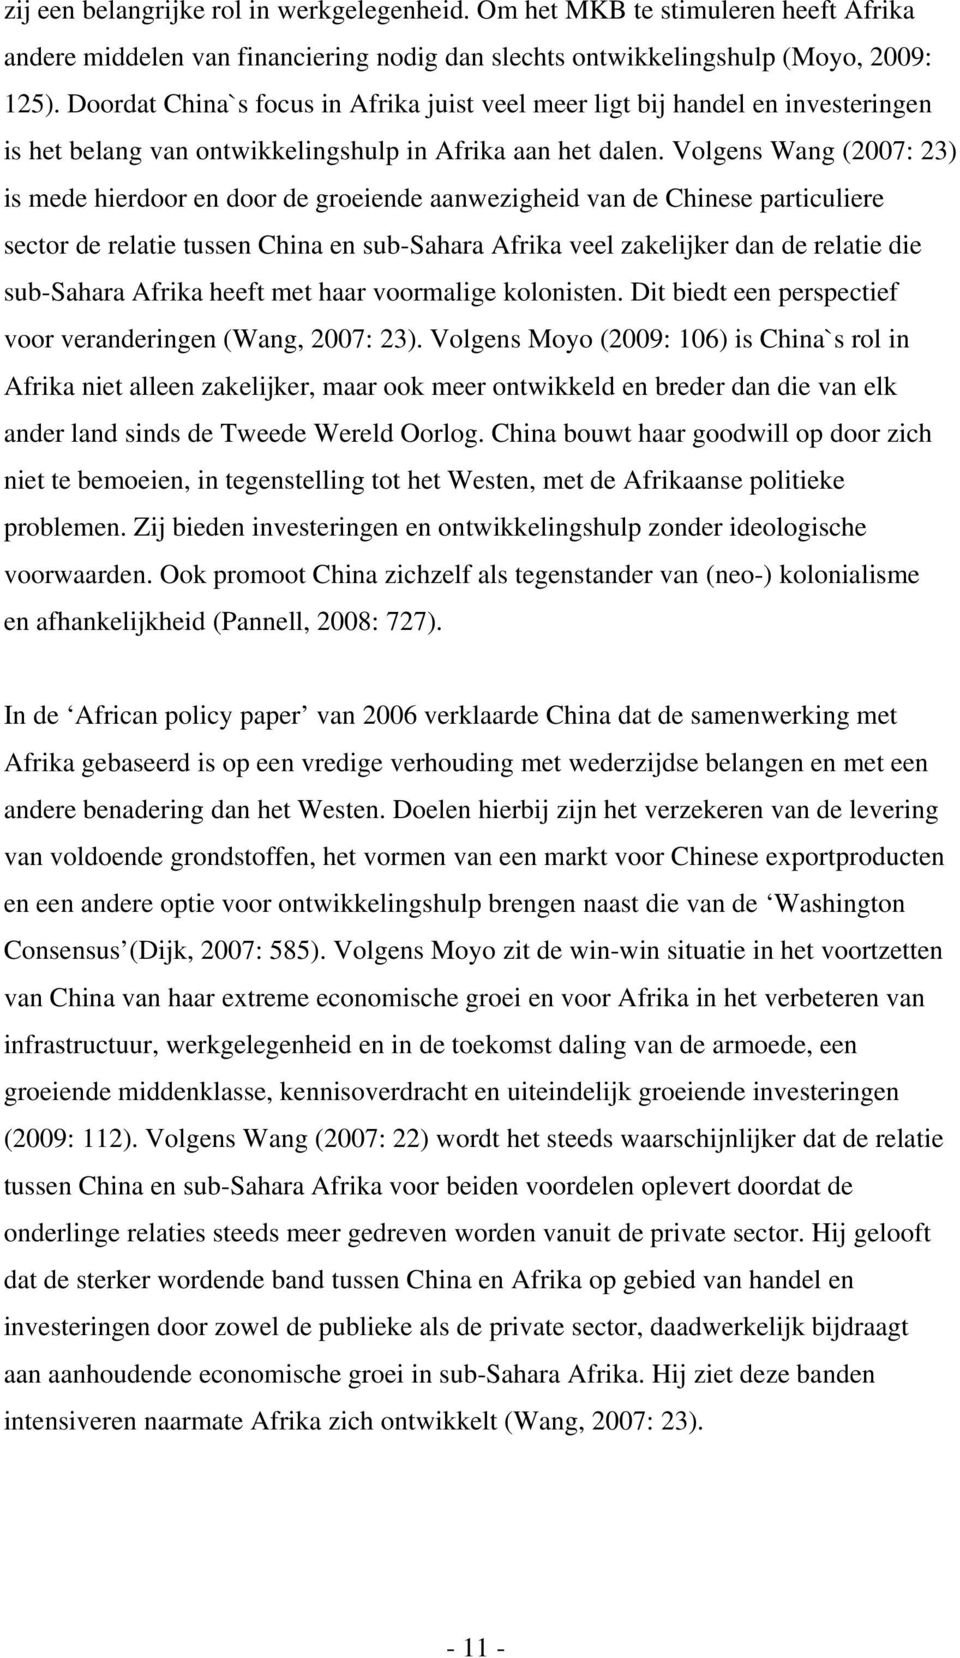 Volgens Wang (2007: 23) is mede hierdoor en door de groeiende aanwezigheid van de Chinese particuliere sector de relatie tussen China en sub-sahara Afrika veel zakelijker dan de relatie die